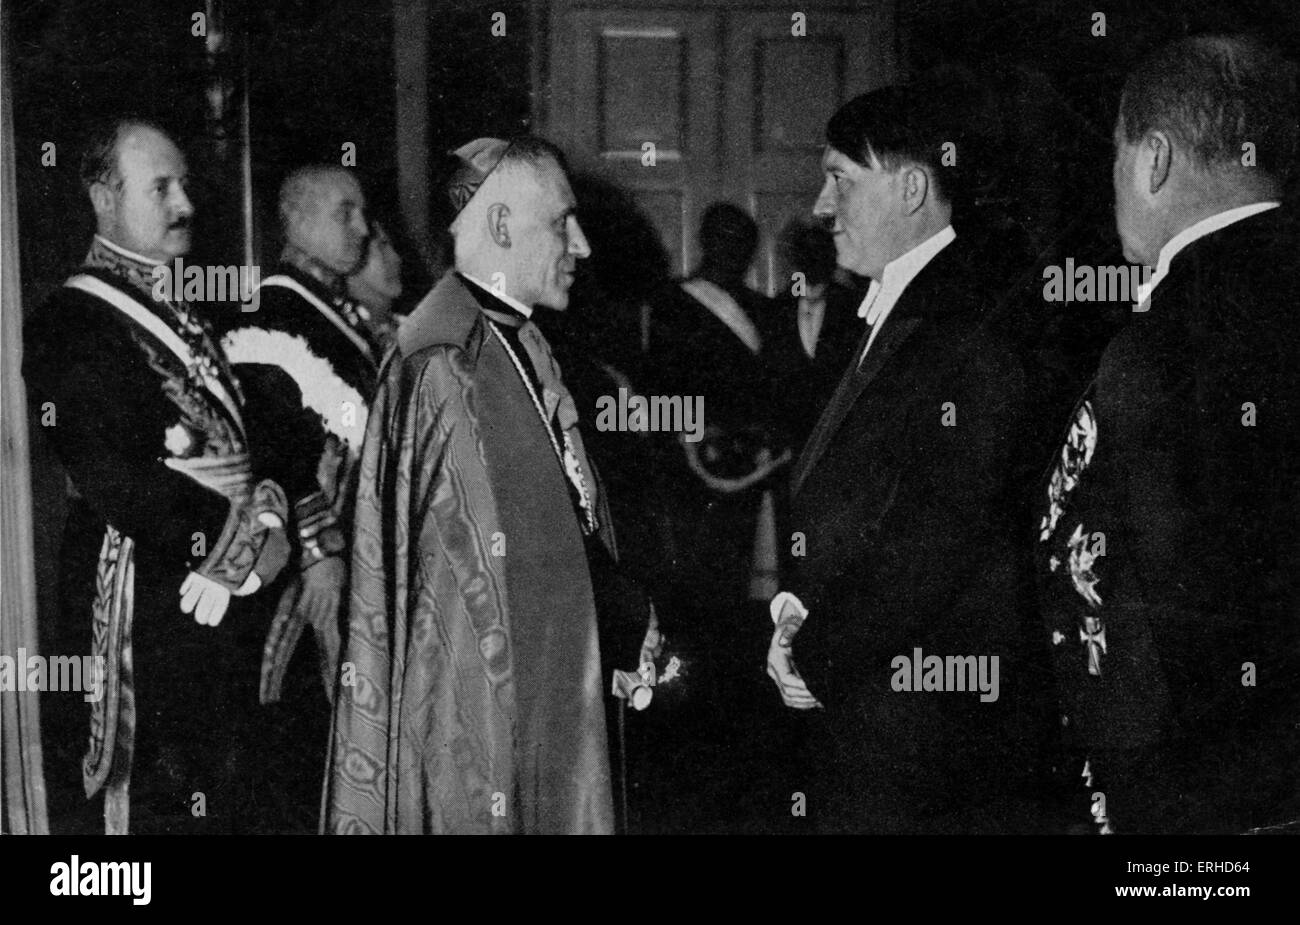 Réunion d'Adolf Hitler, la légation pontificale en 1935. Fondateur et chef du parti nazi allemand, 20 avril 1889 - 30 avril 1945. Banque D'Images